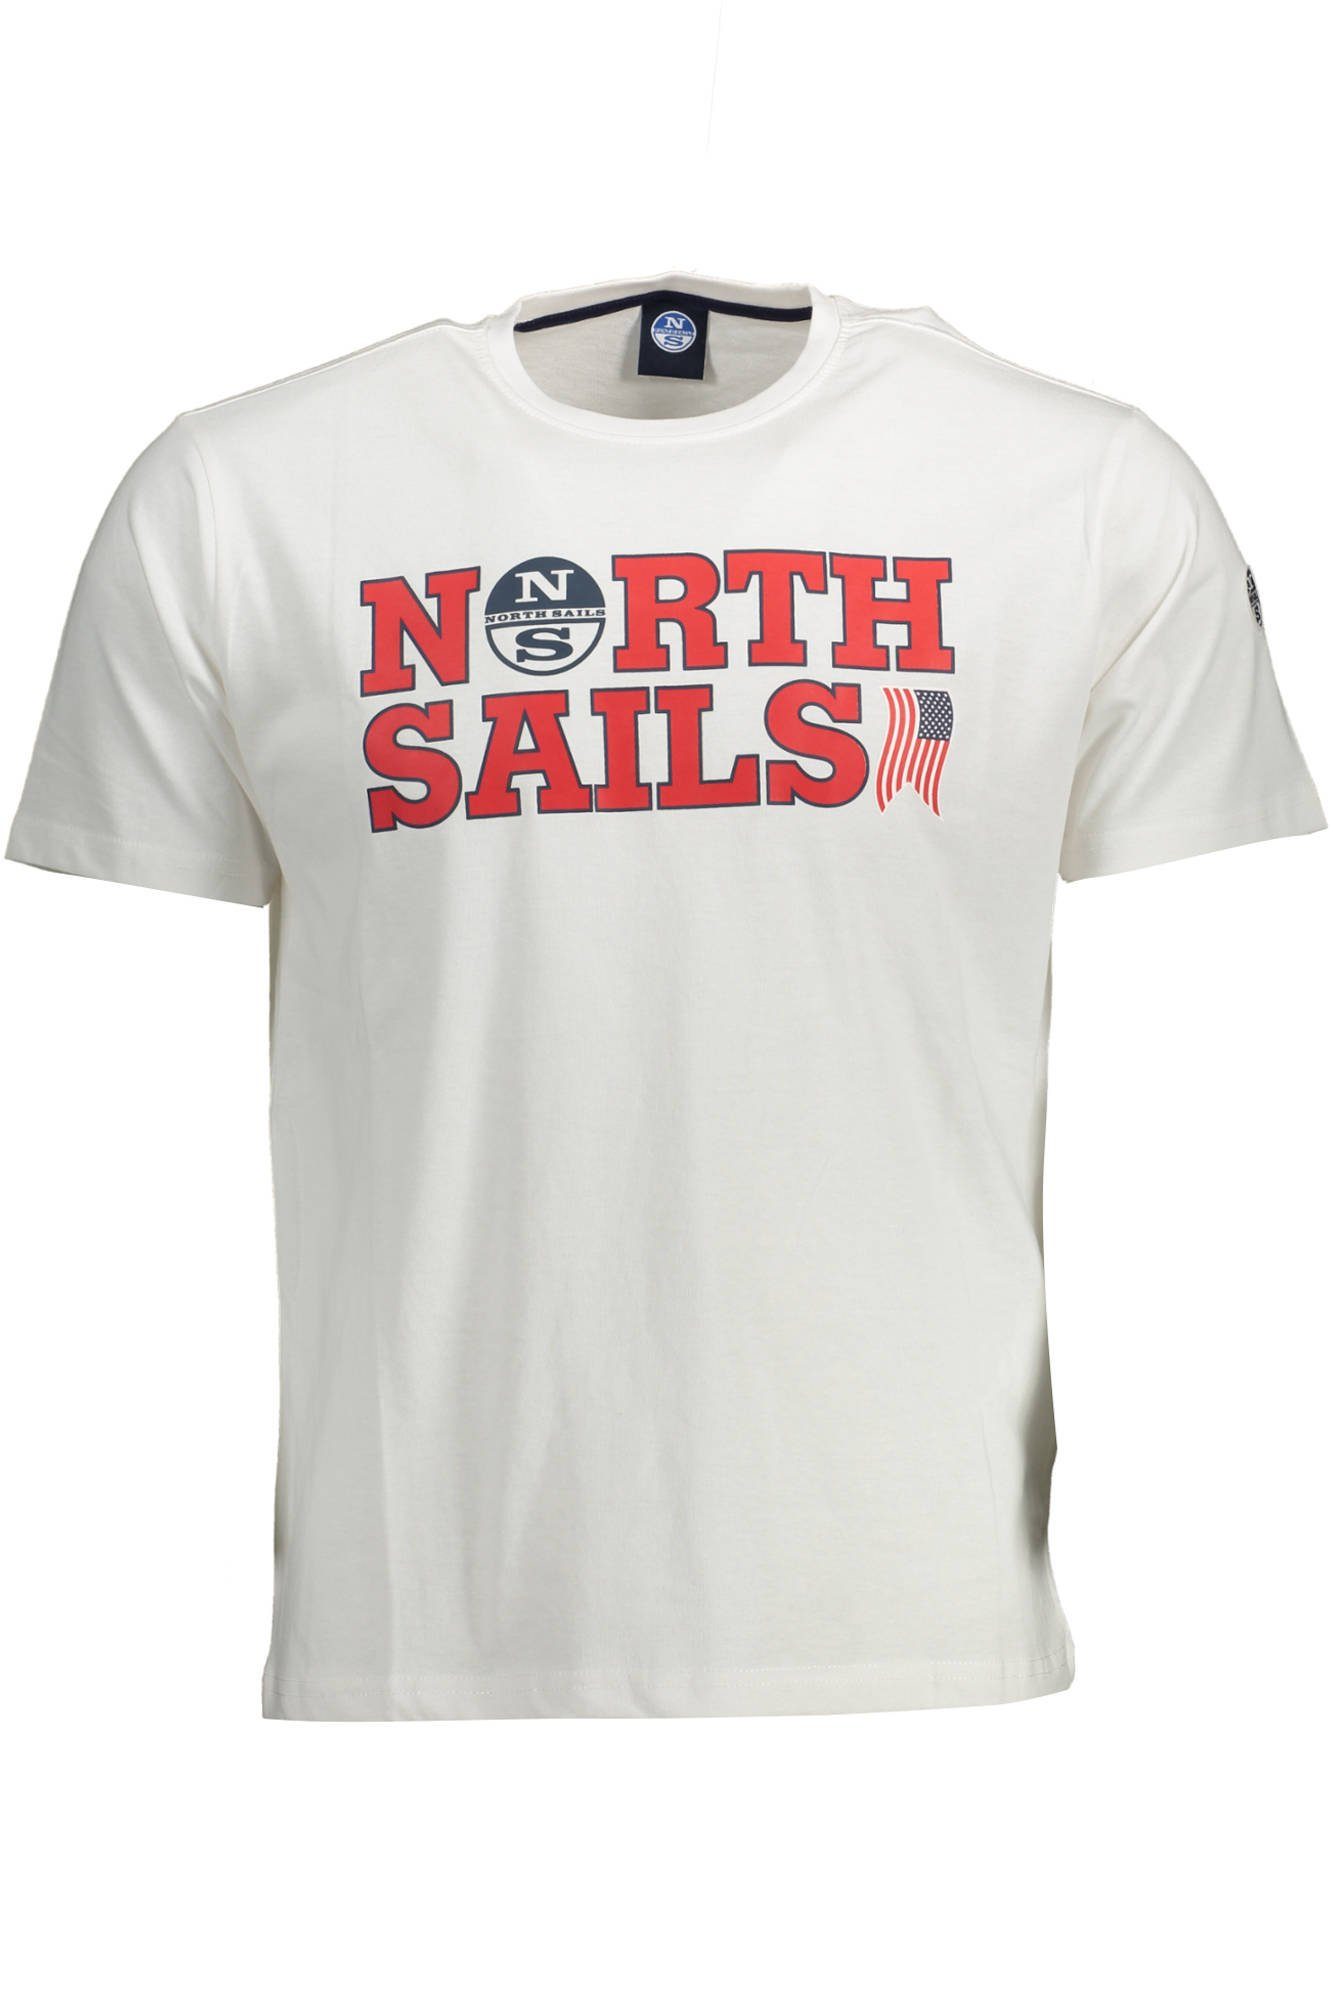 kurzarm Rundhalsshirt Rundhalsausschnitt, (0101) weiß Sails Sails North Sweatshirt mit Herren North T-Shirt